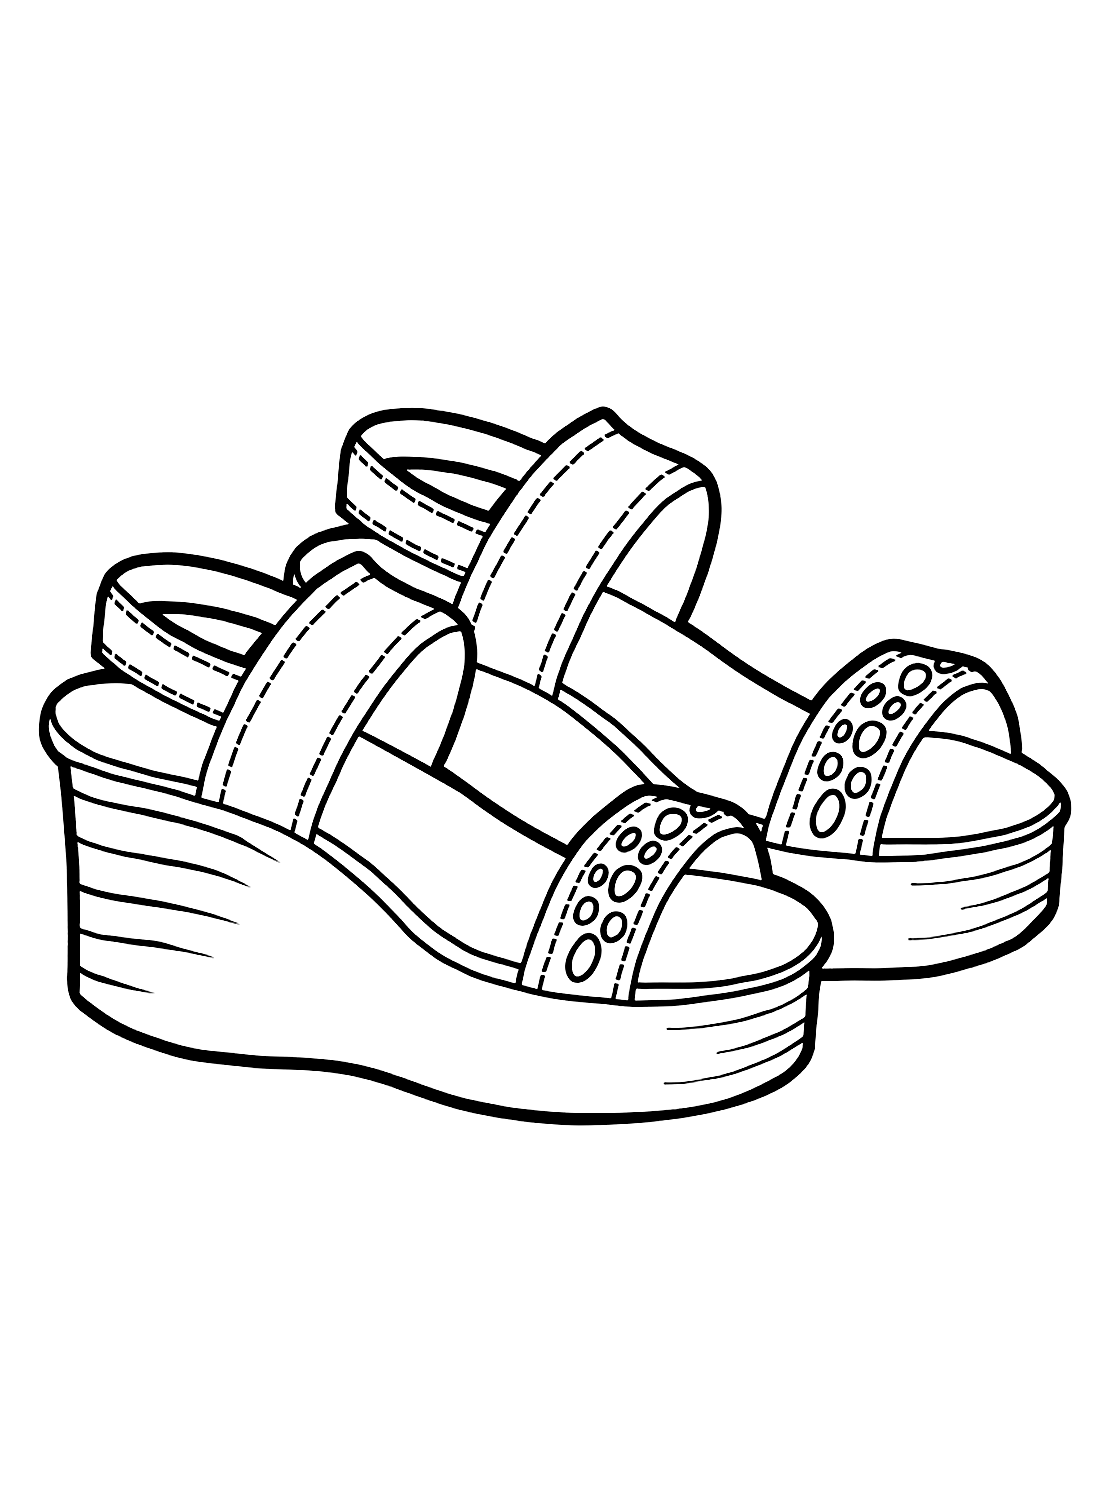 Imagen para colorear de zapatos de mujer de Shoe